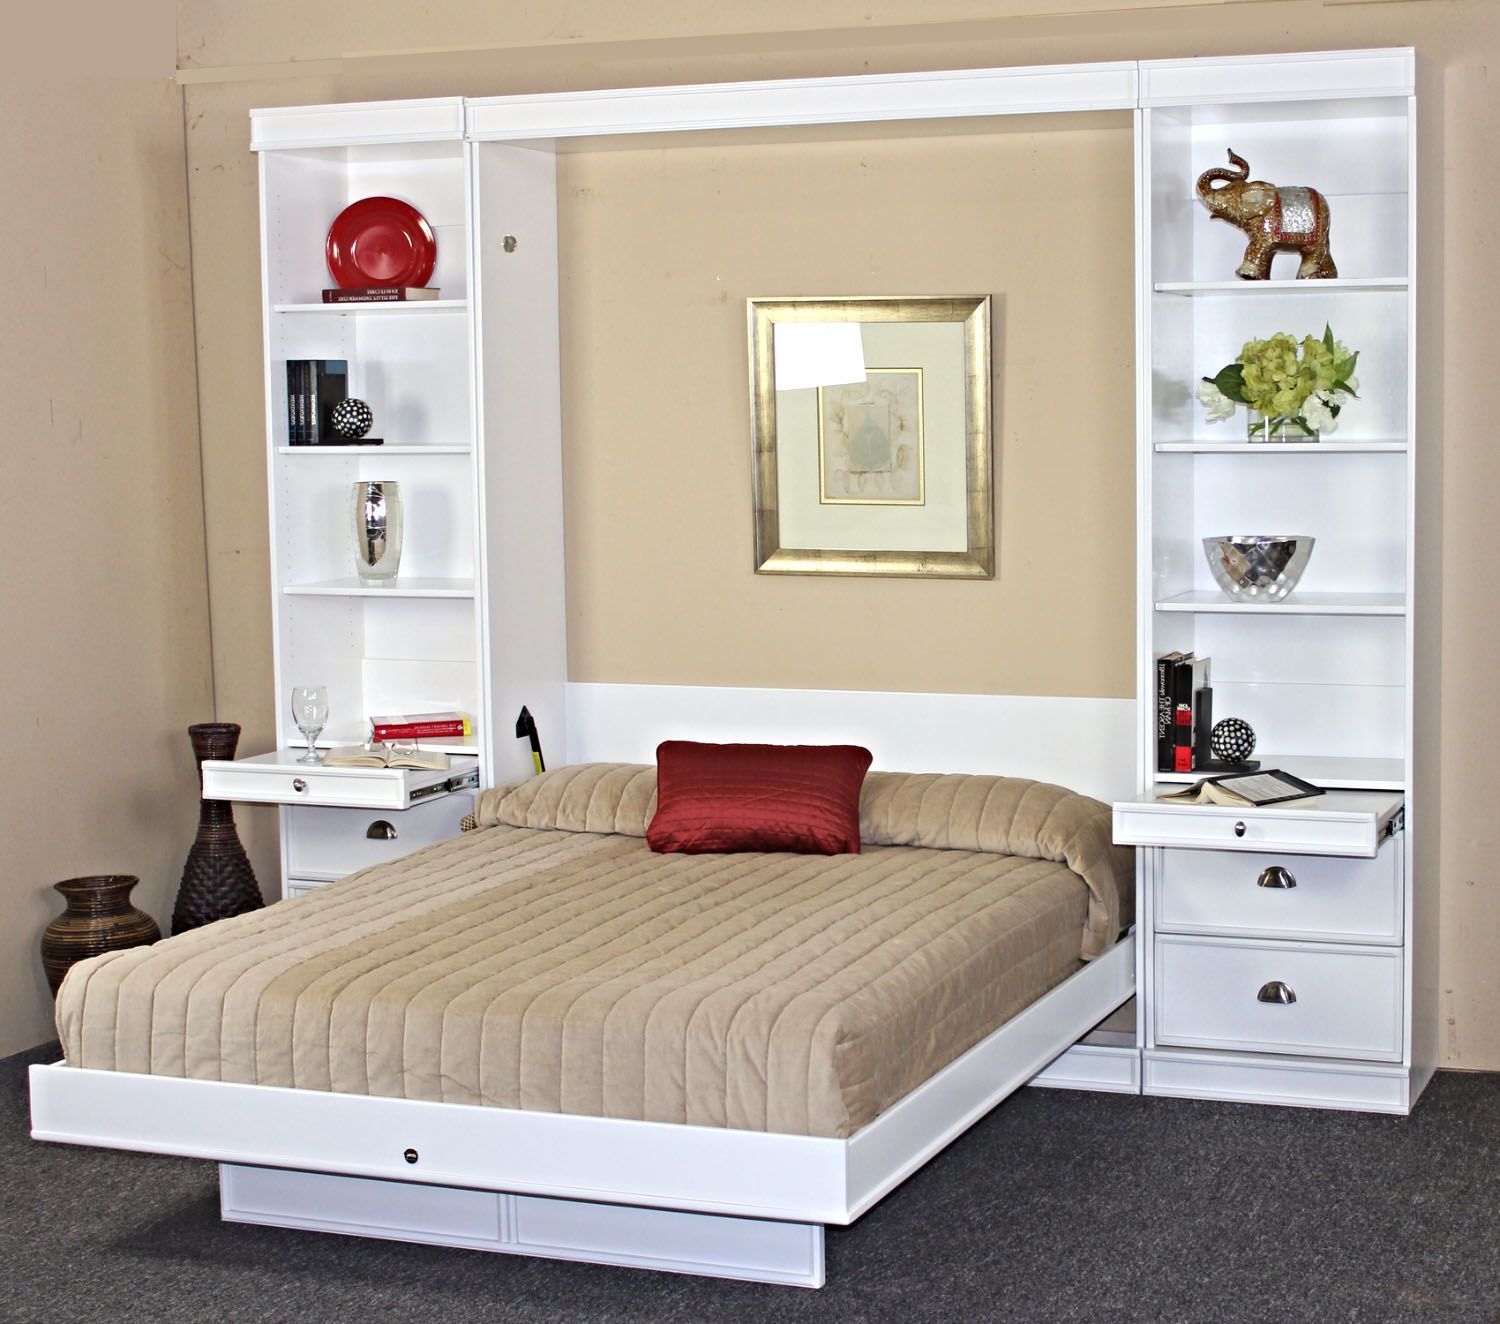 Откидная кровать, встроенная в шкаф: 90+ вариантов кардинального преображения маленькой квартиры